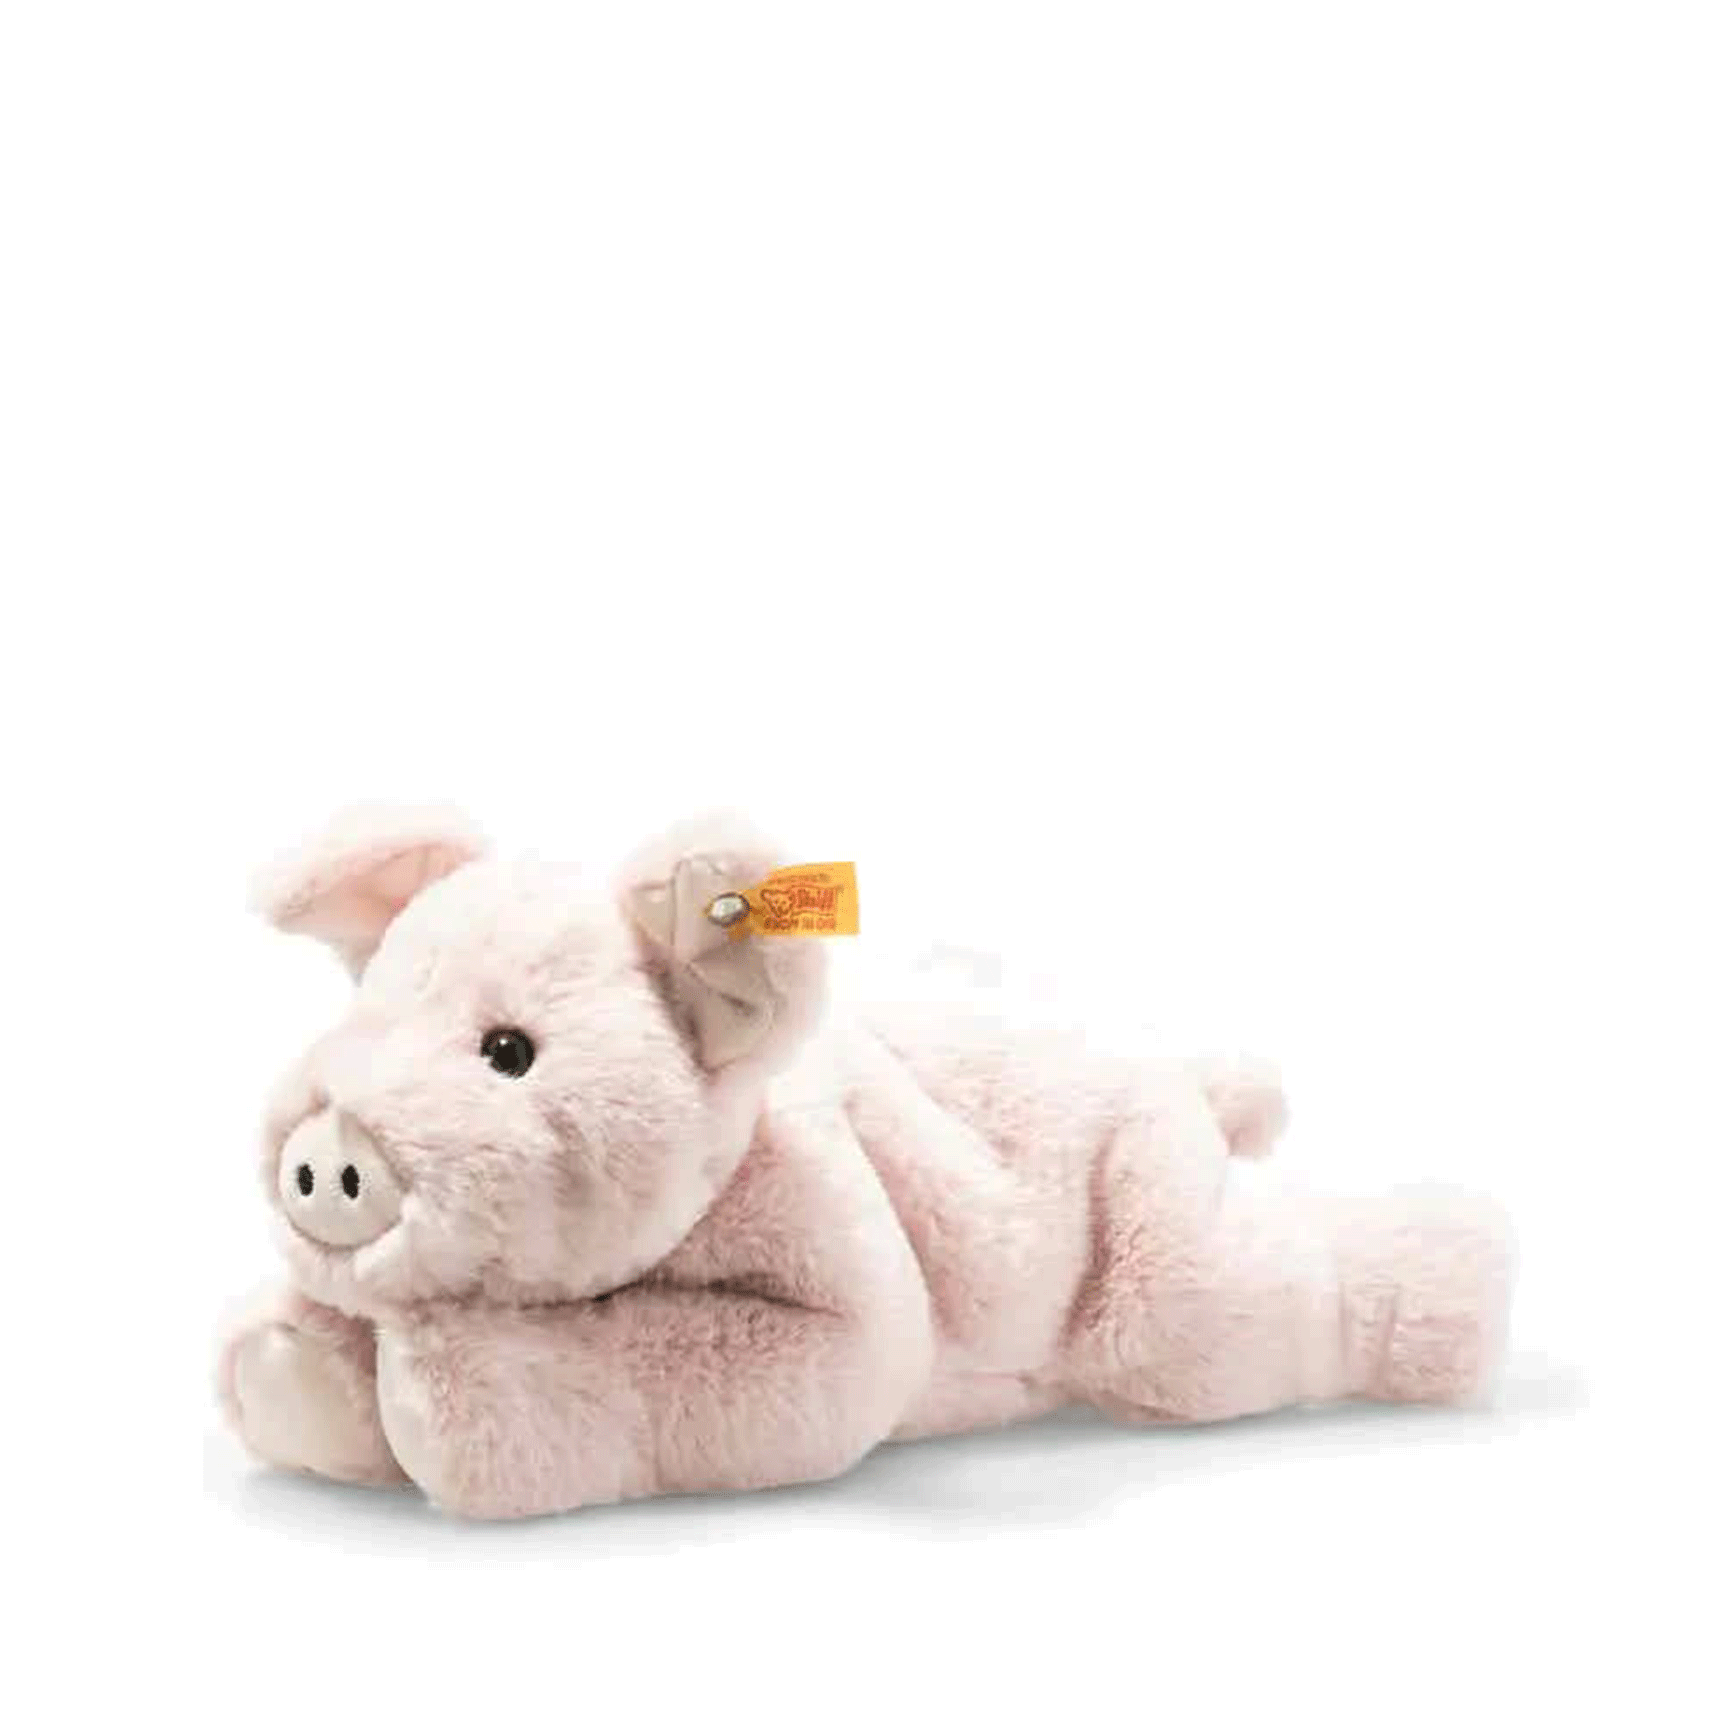 Steiff Piko Pig Teddy Bears 63978 40015050063978